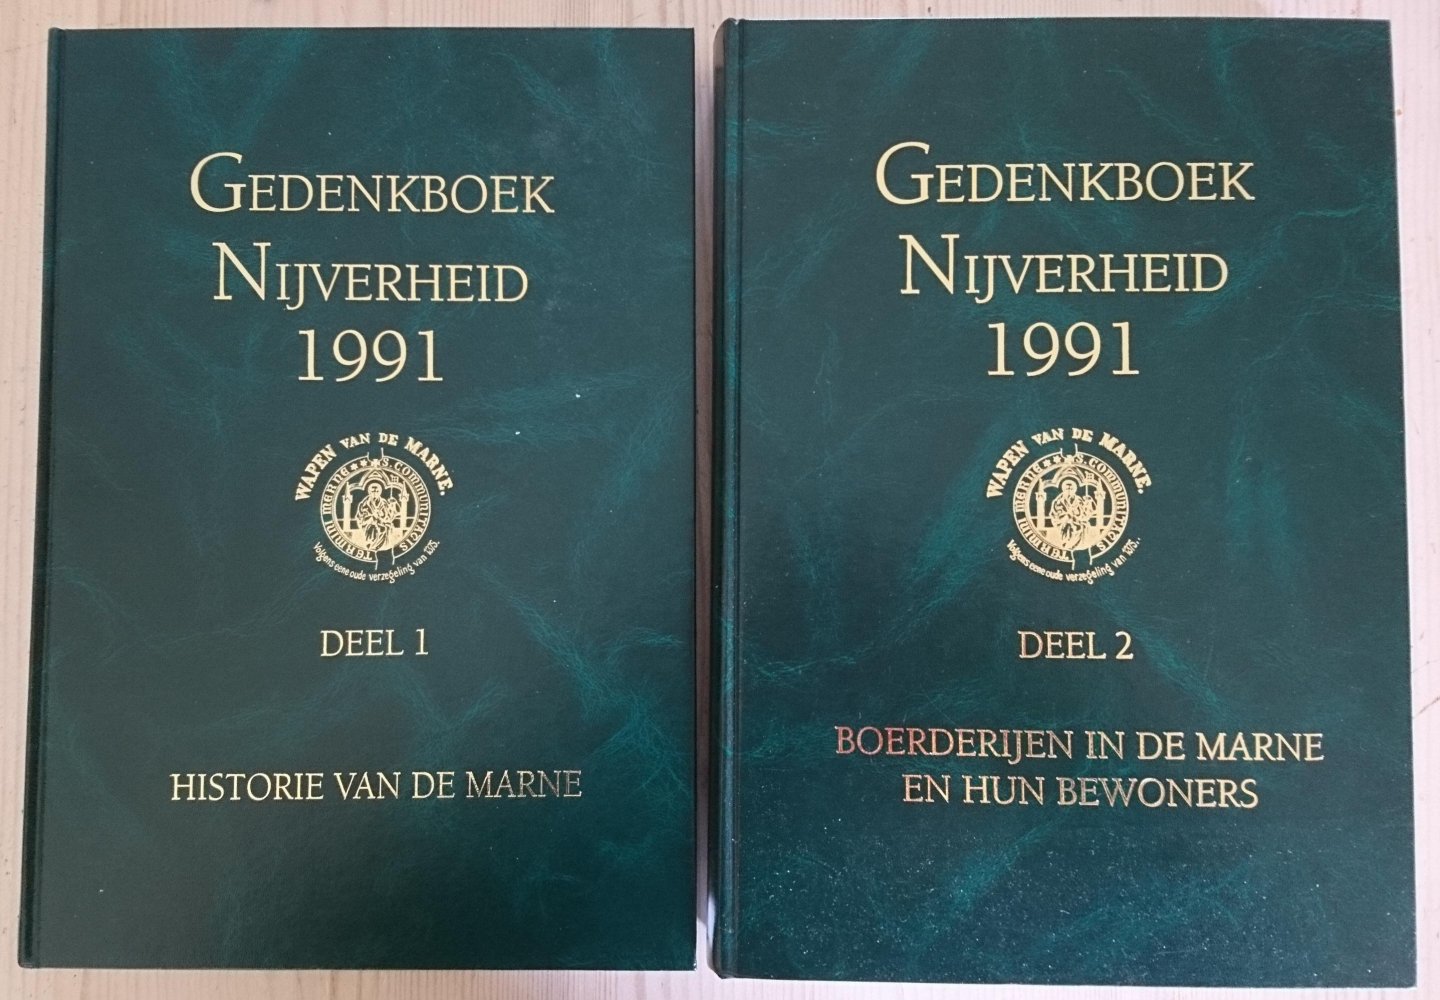 G. F. Beukema (red)  e.a - Gedenkboek Nijverheid 1991. Deel 1: Historie van de Marne en deel 2: Boerderijen in de Marne en hun bewoners.